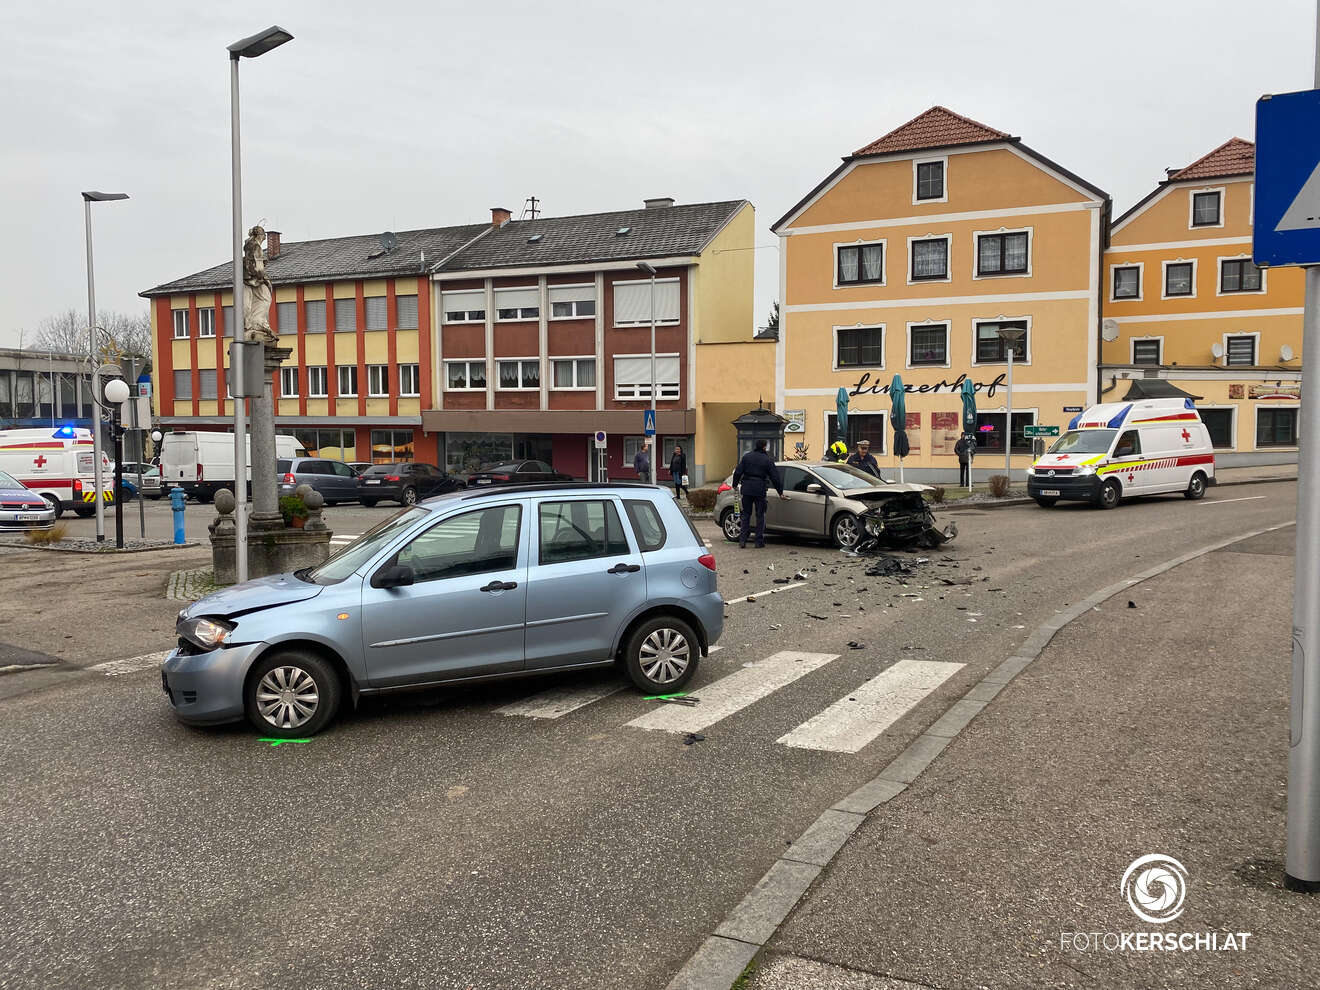 Verkehrsunfall im Ortszentrum von Gallspach